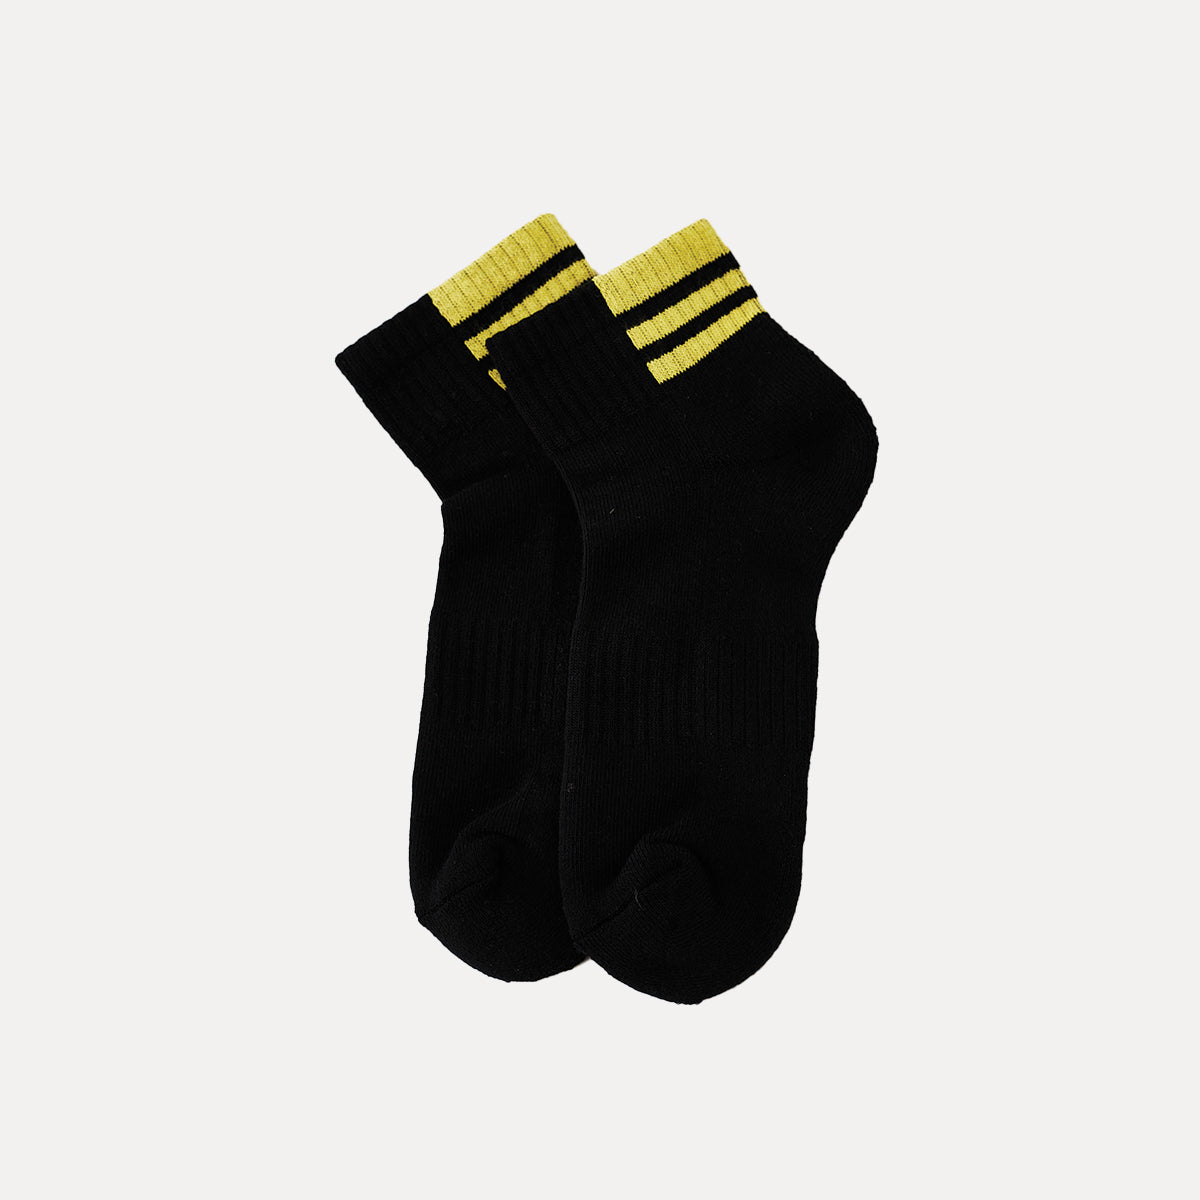 襪子 |踝墊襪 - 黑色/黃色